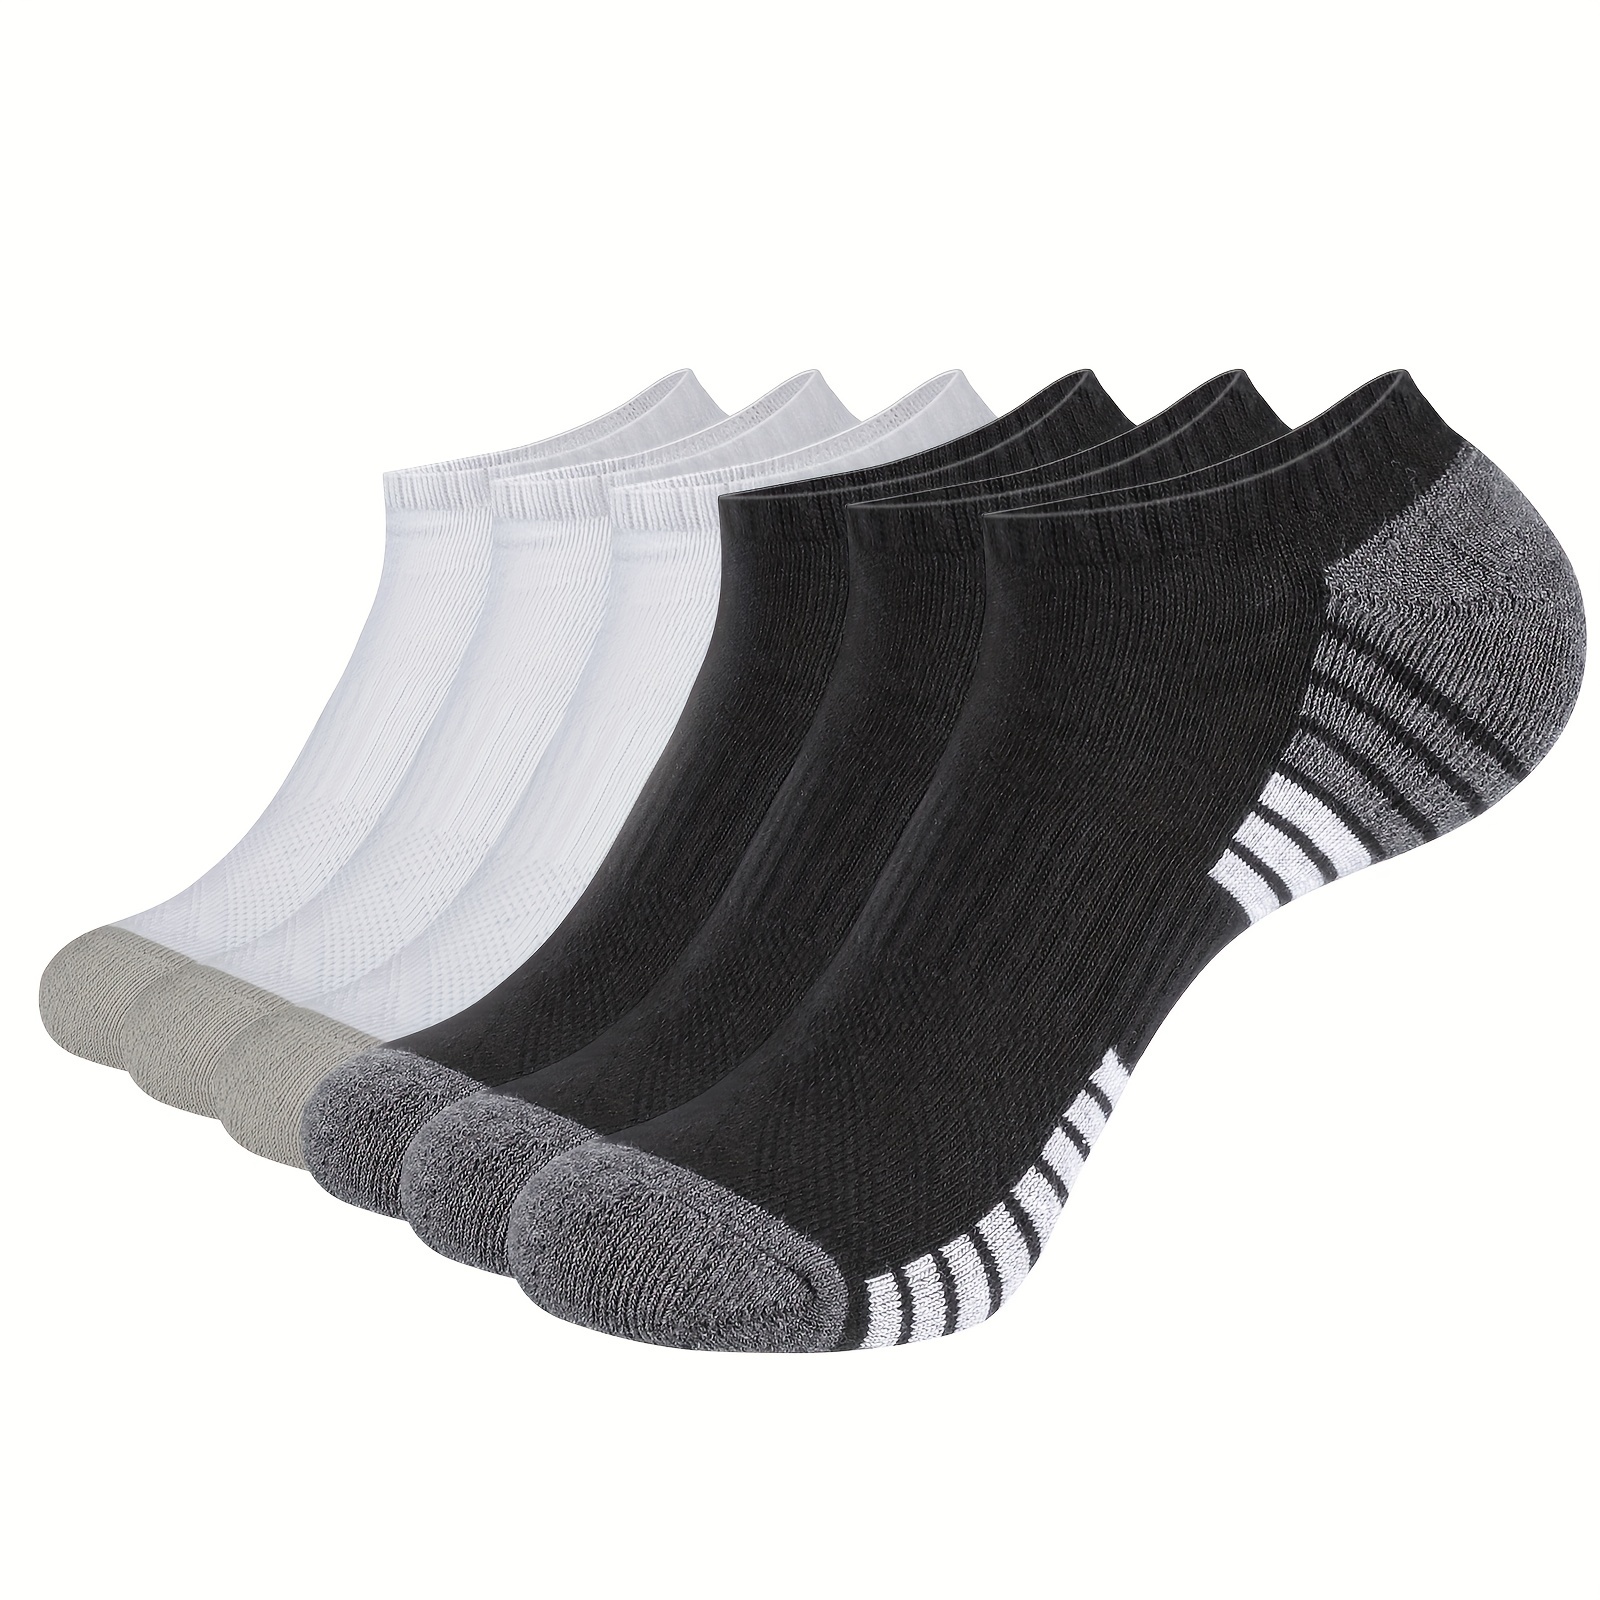 6 Pairs Unisex Trainer Socks Mesh Breathable Sport Socks for Men Women  Cotton Low Cut Short Socks Ankle Socks Running Socks (Black) :  : Fashion